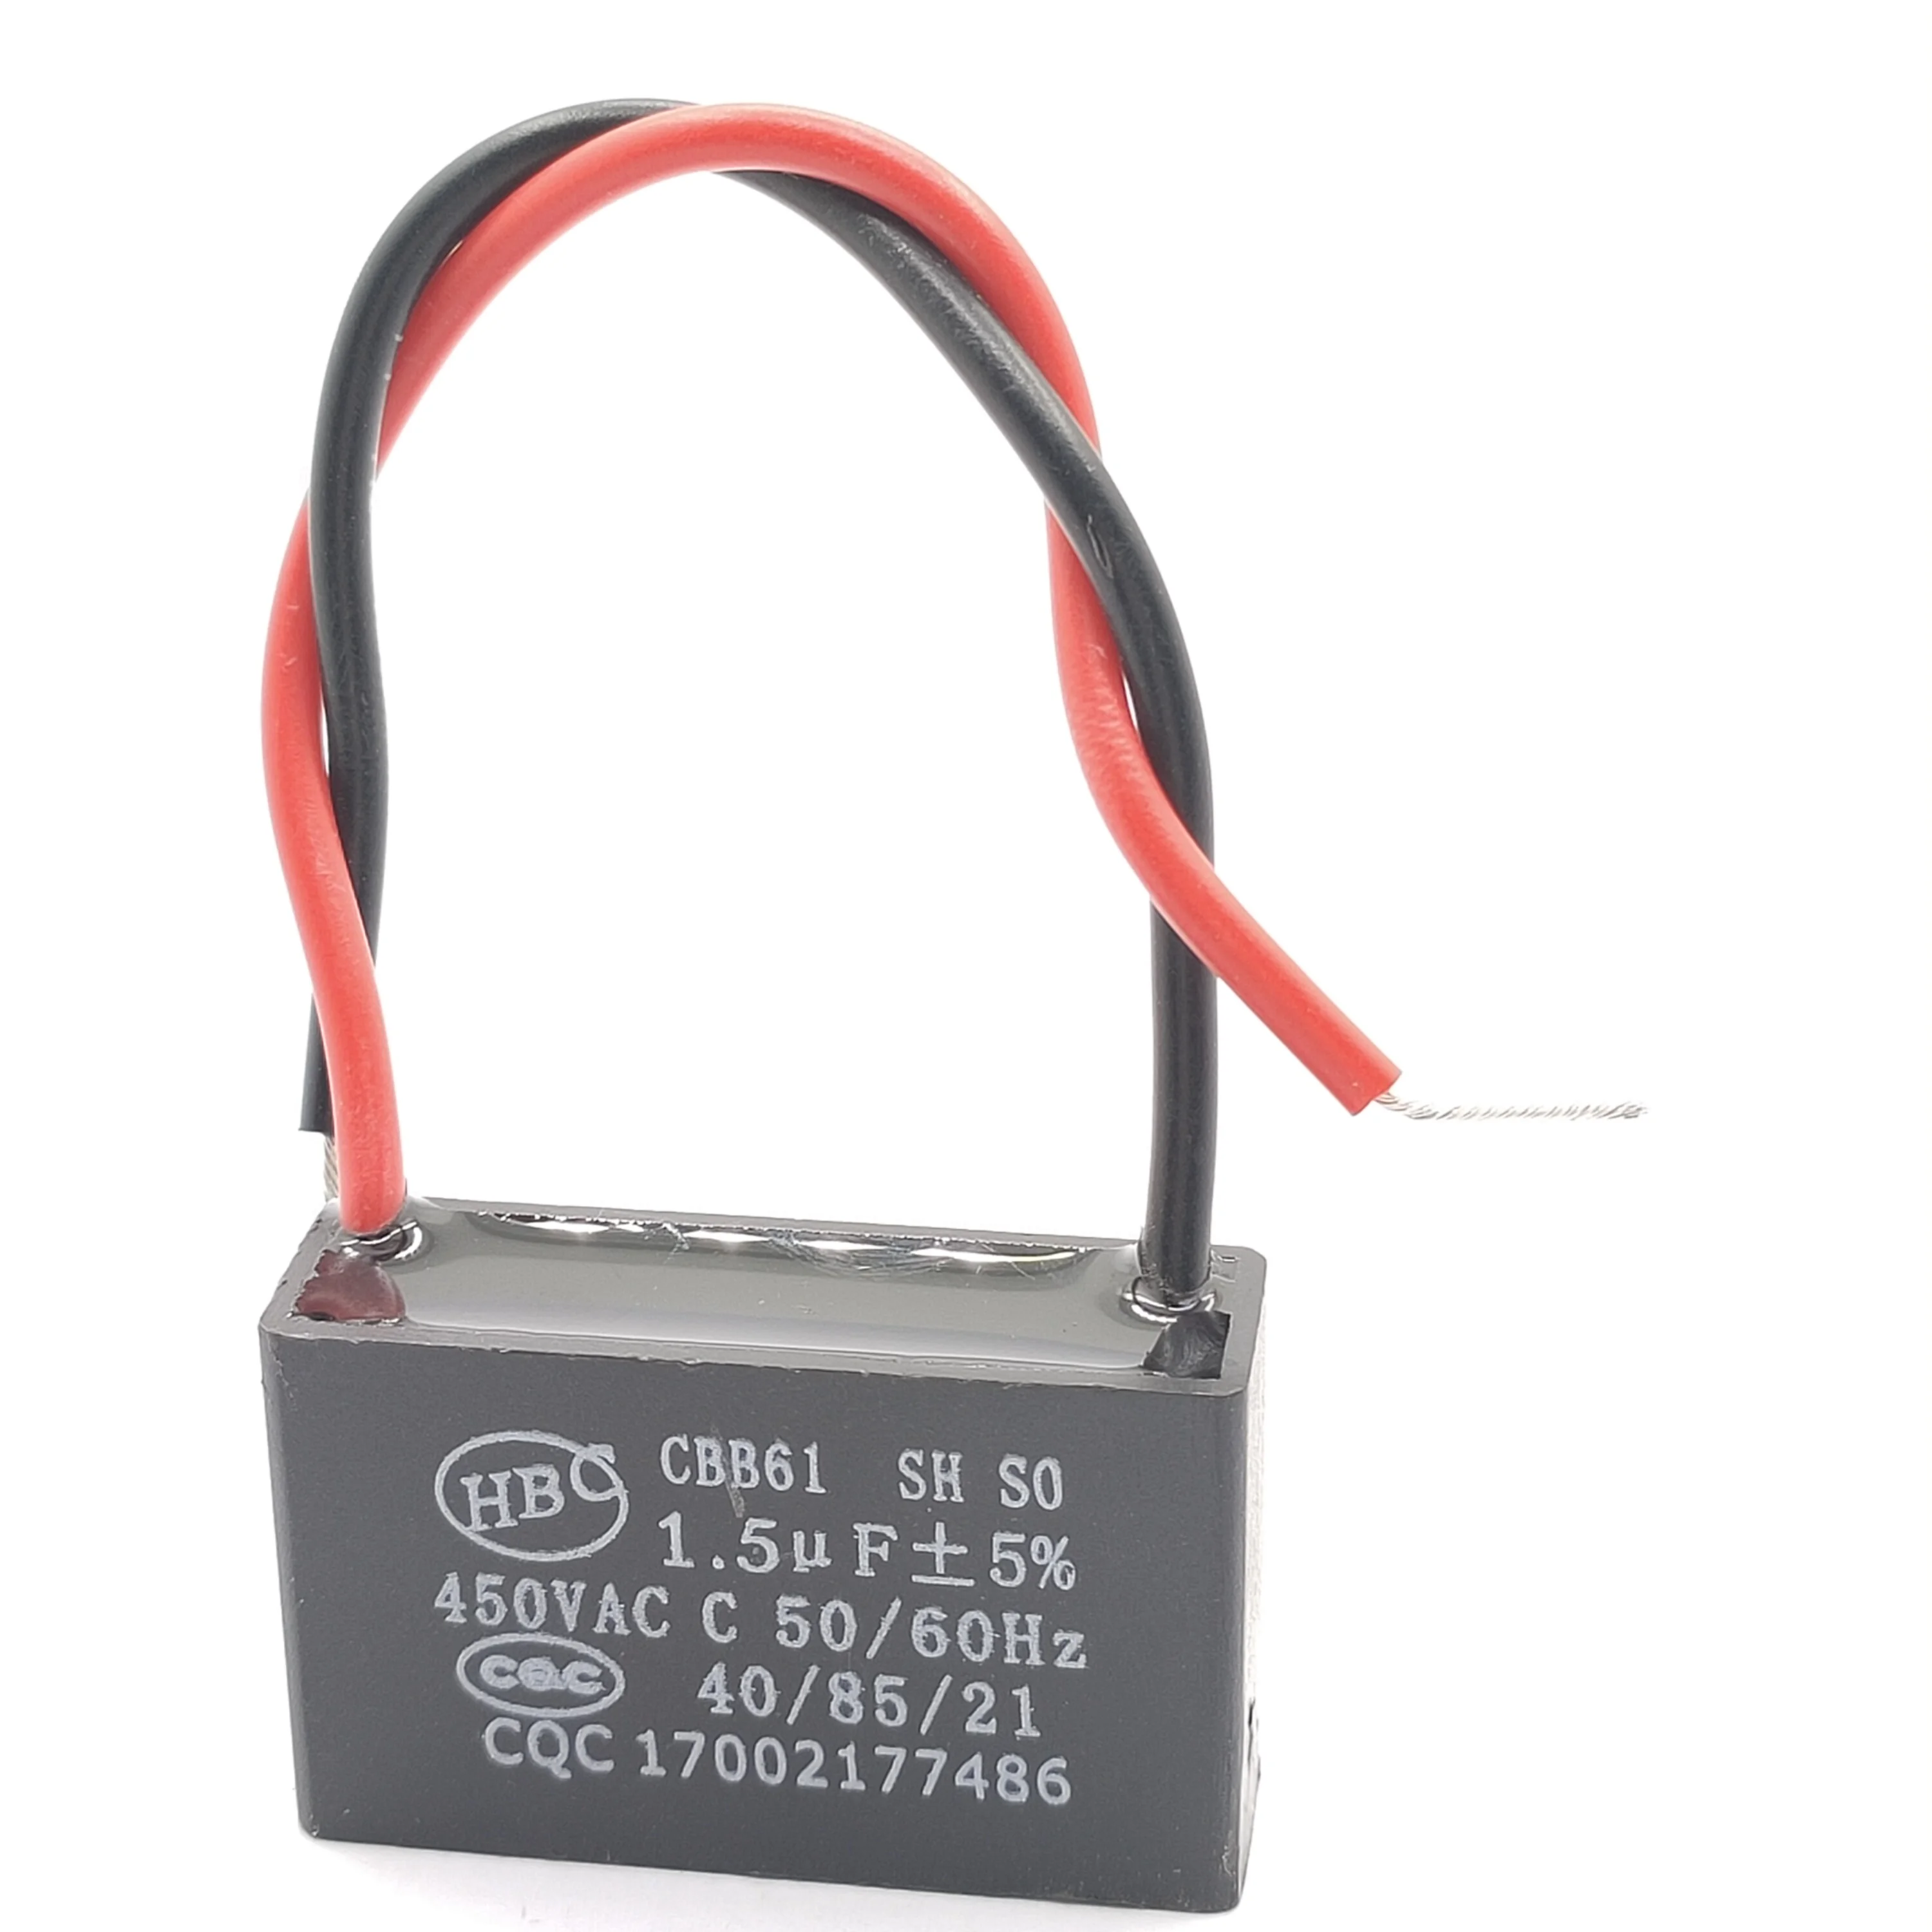 Μf CBB61 450 VAC Operating Capacitor 50/60Hz 12uF With 4 Connectors